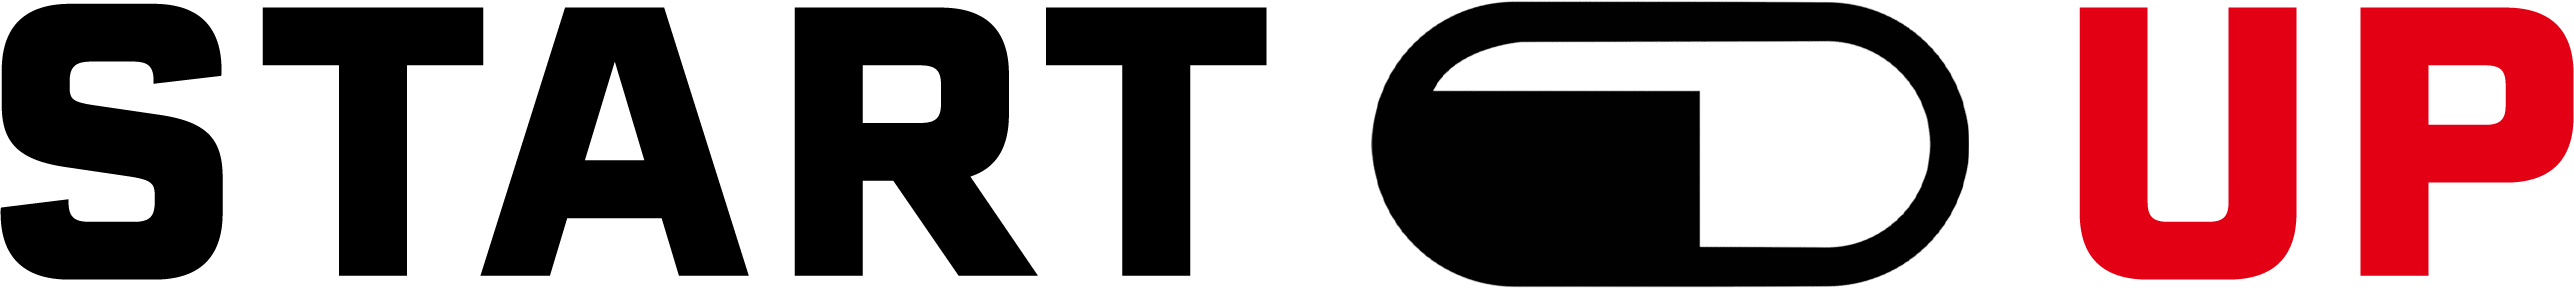 Startupill-logo